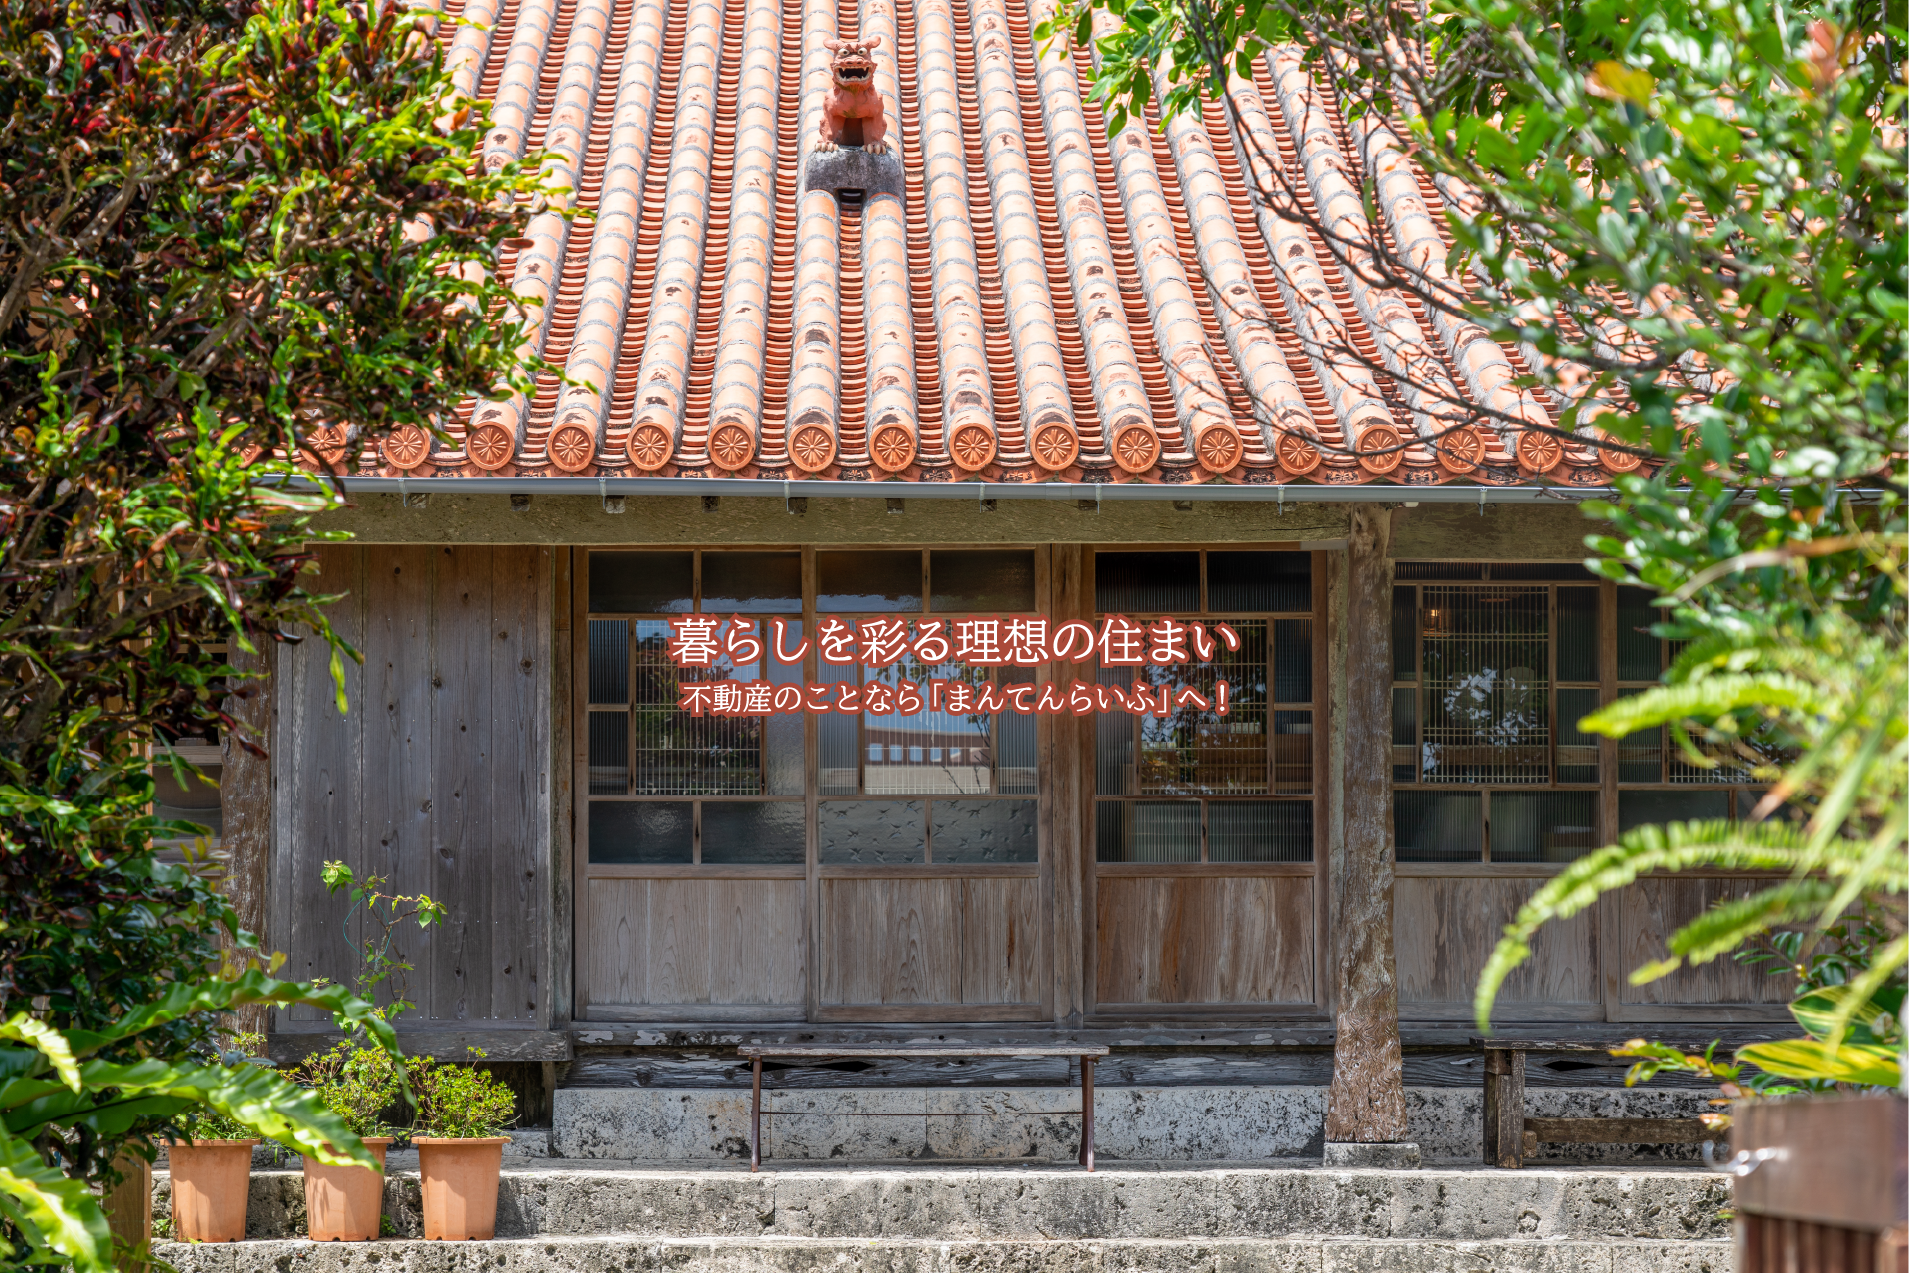 赤瓦屋根の上にシーサーが設置されている沖縄のお家の画像